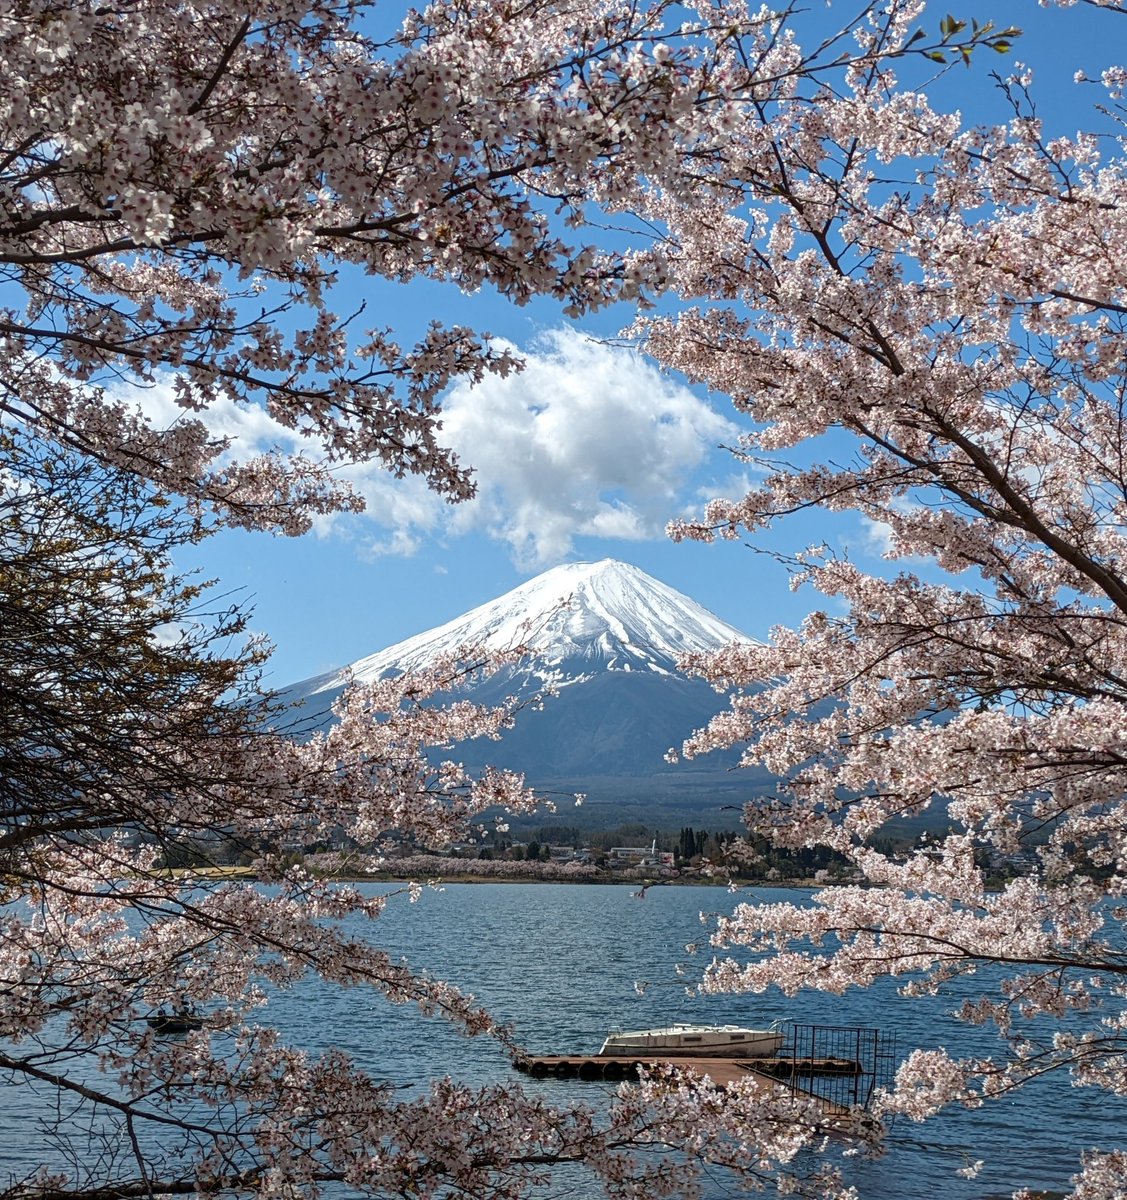 河口湖北岸からの富士山です。河口湖の桜は見事に満開。富士山とのコラボレーションは最高です。
#富士山　#富士五湖　#河口湖　#桜満開　#fujisan　#mtfuji